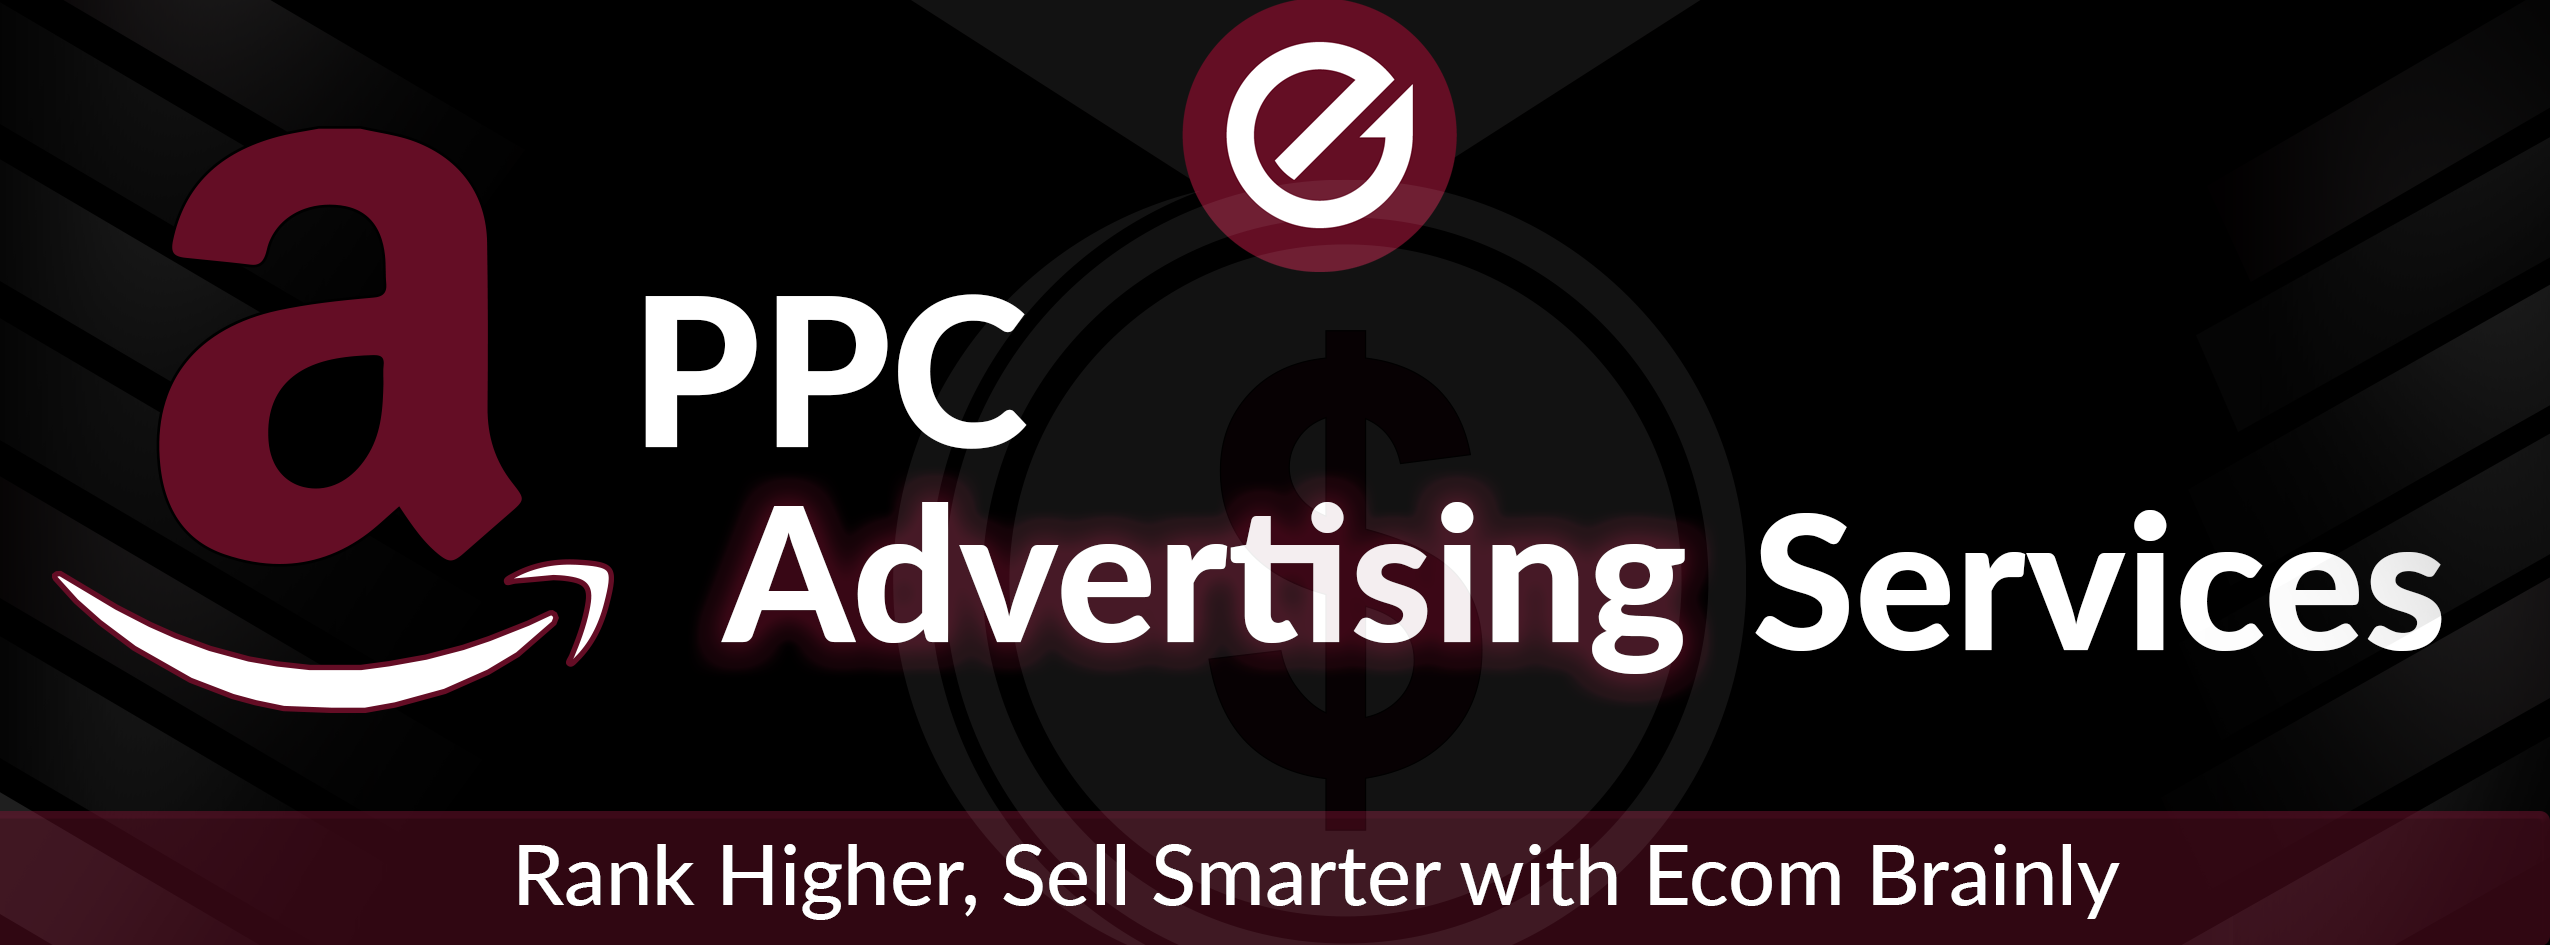 Amazon PPC Advertising Services